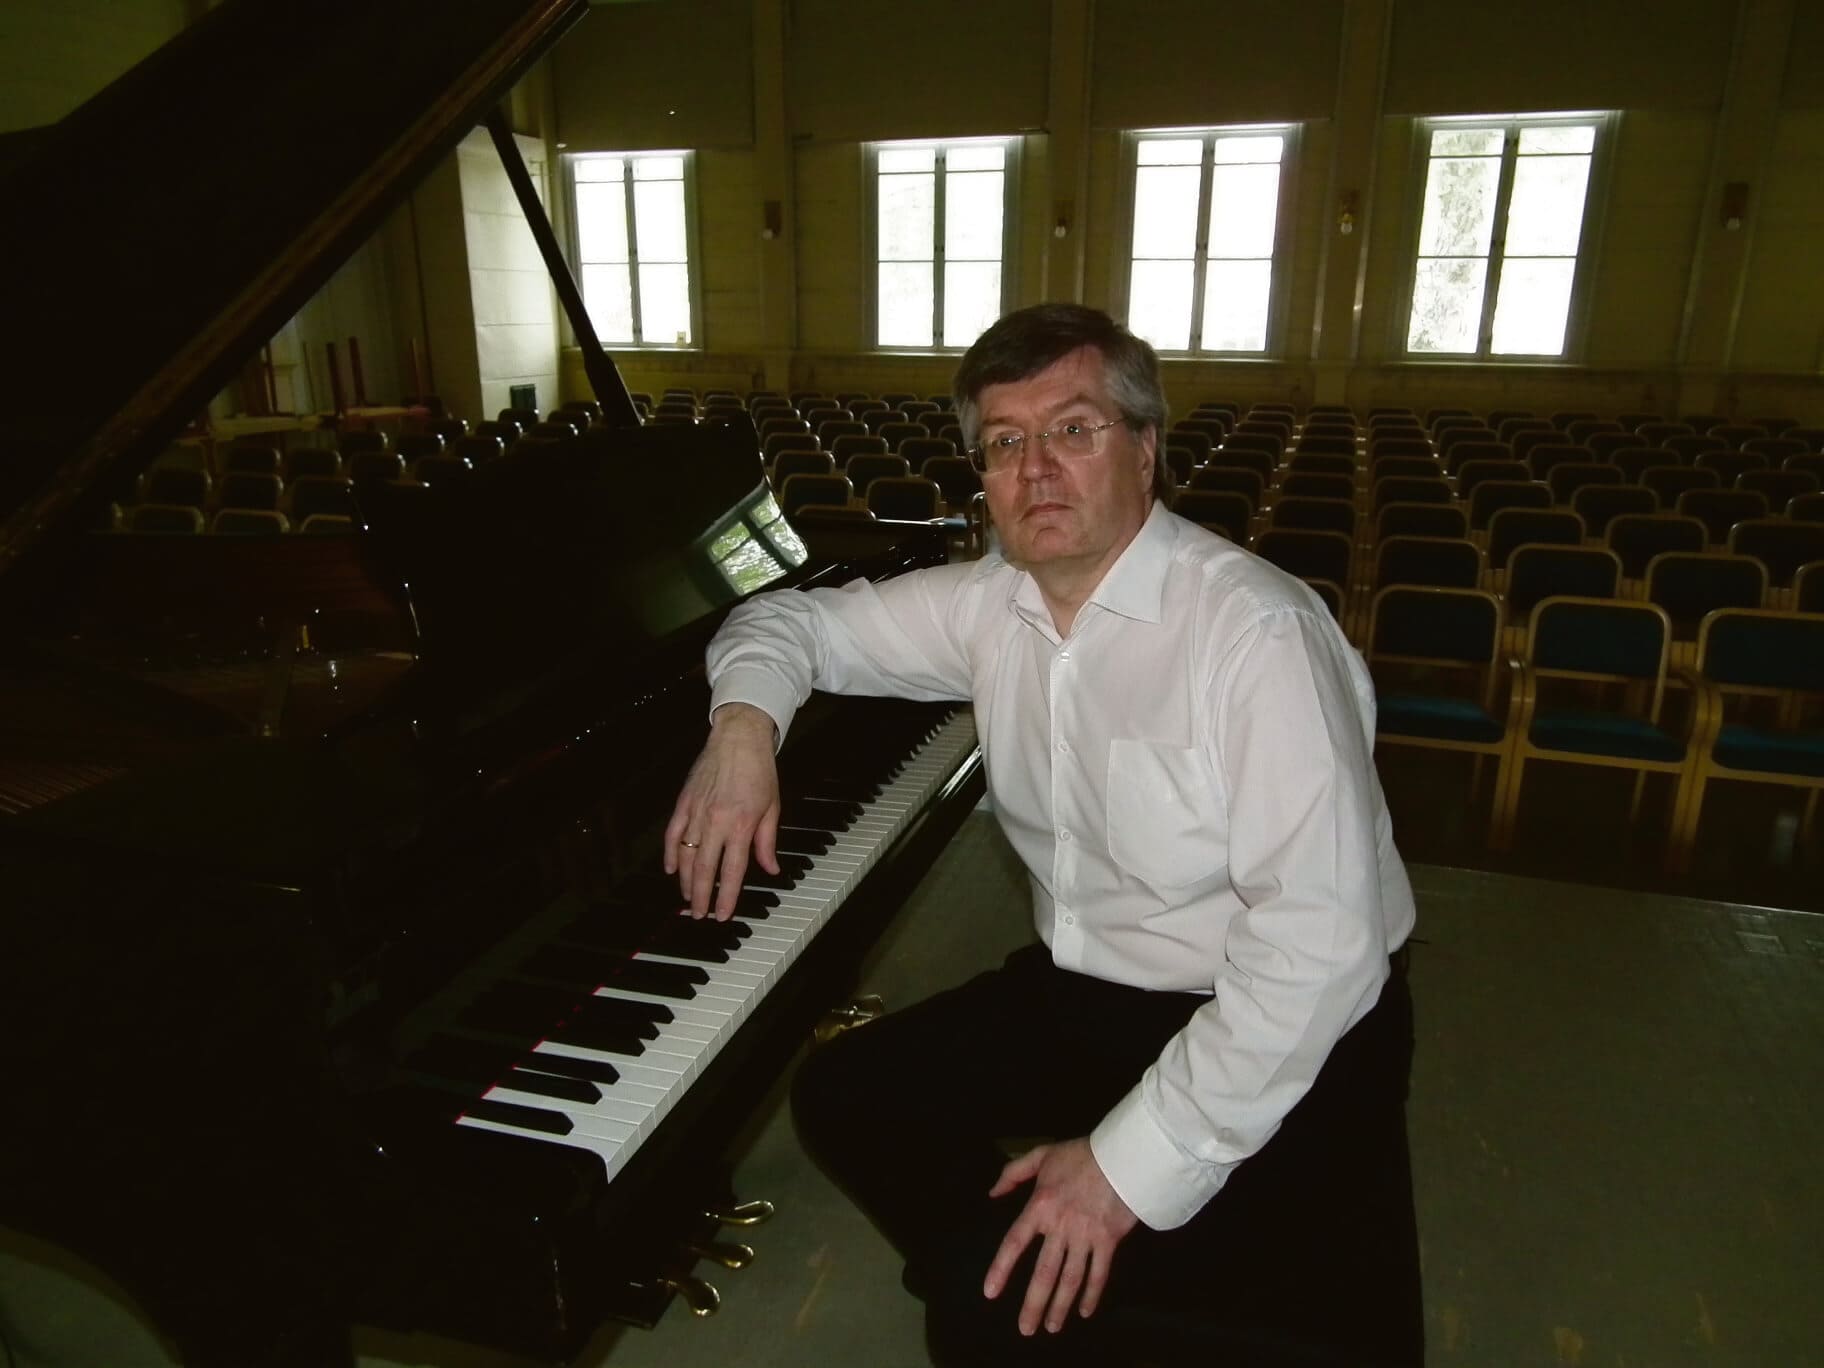 Pianon mestari Ilya Krughoff jälleen Kiiruun talolla | Tapahtumat ja tekeminen | Kotiseutulainen